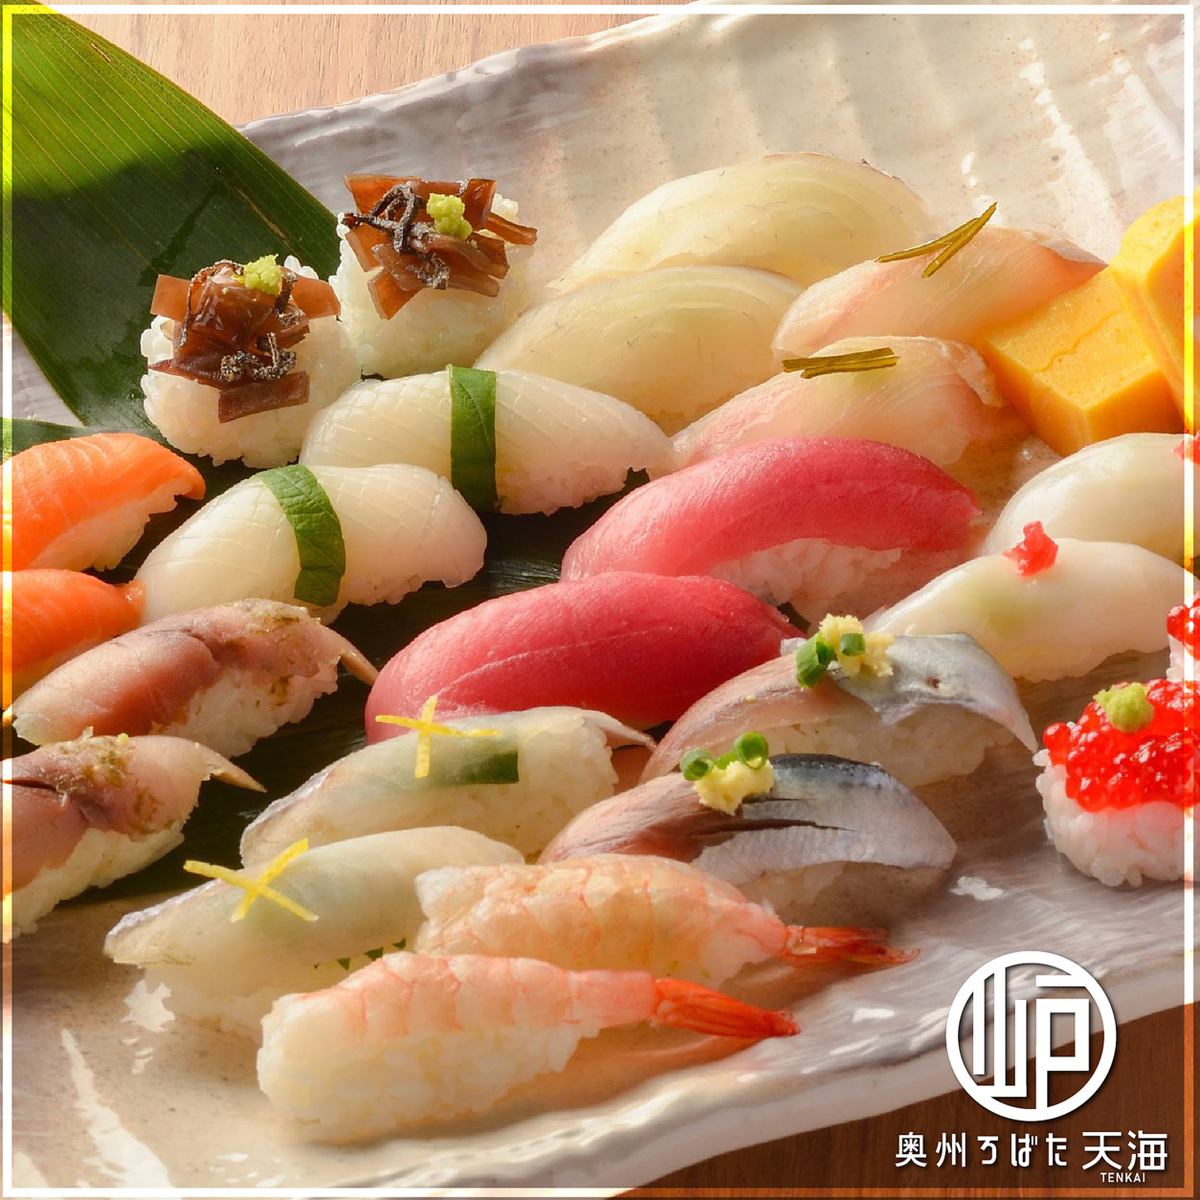 Enjoy fresh fish nigiri sushi [from 200 yen]!